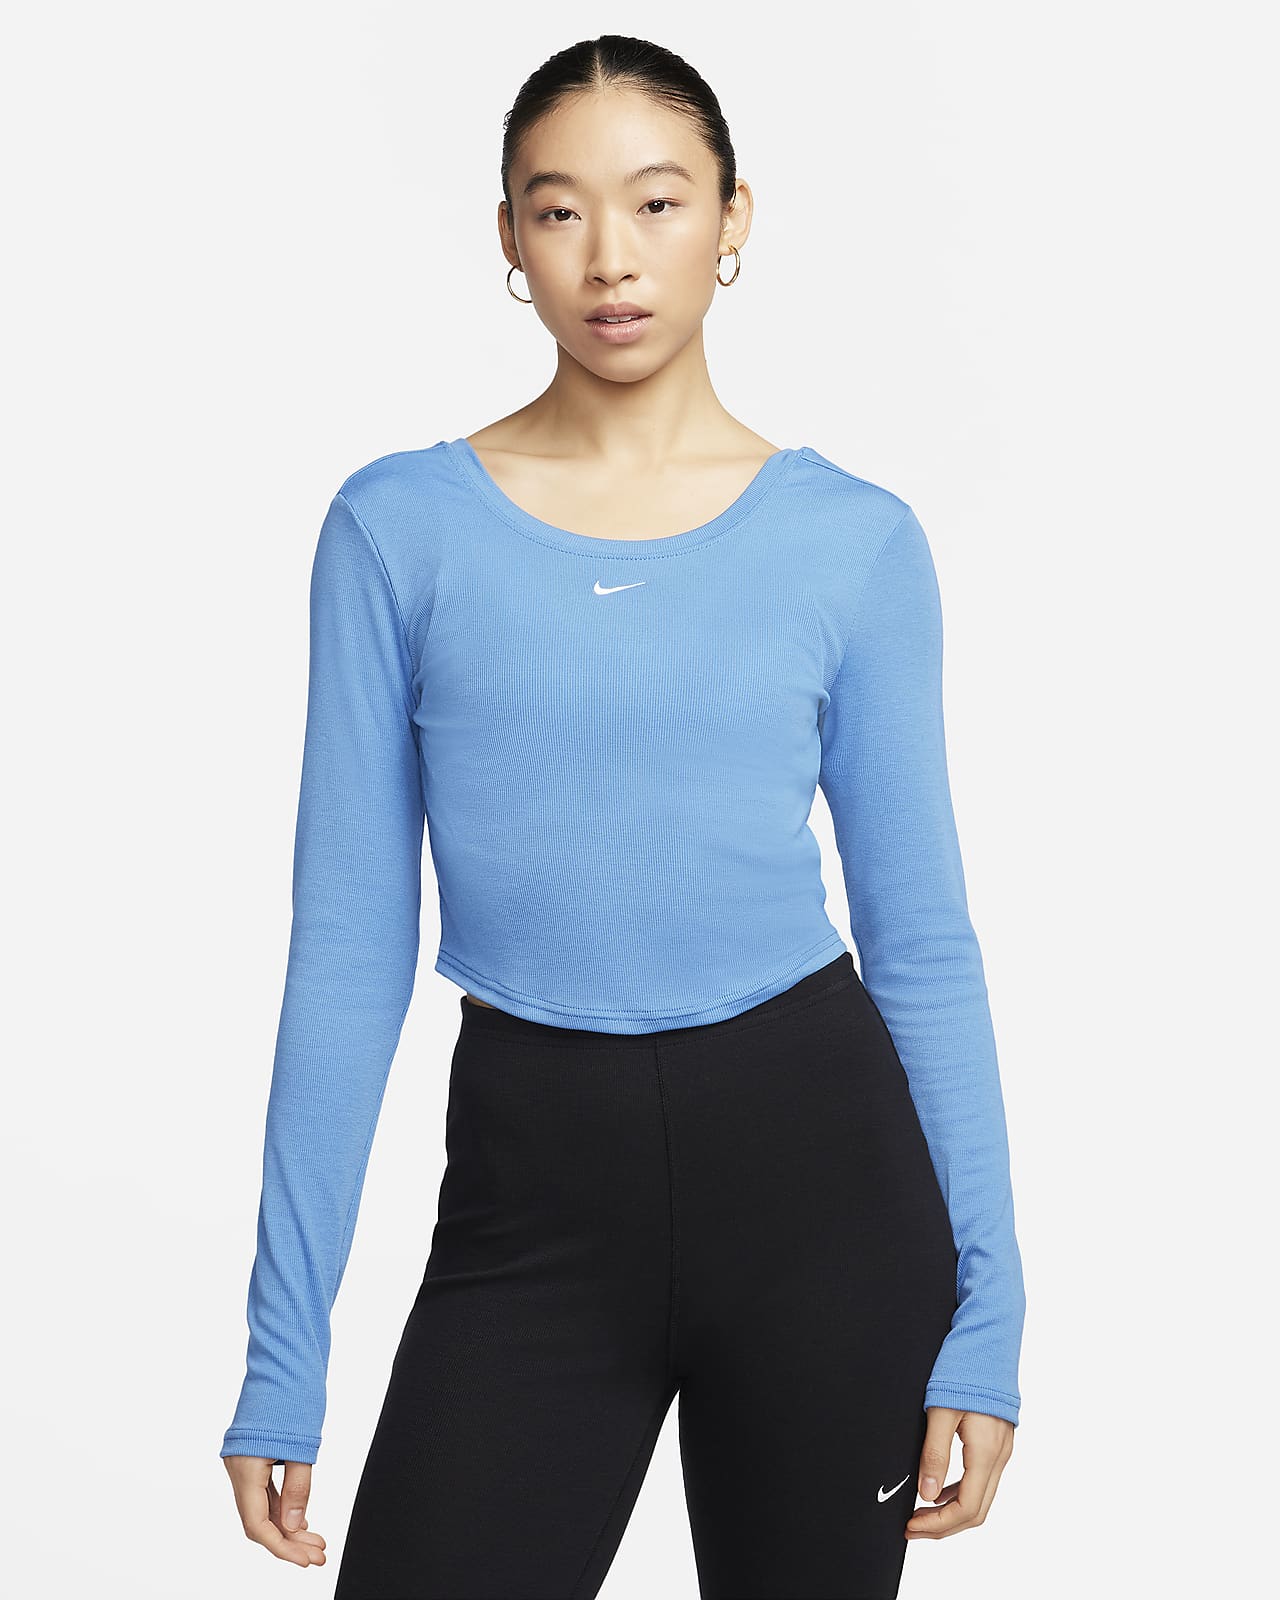 Camisola minicanelada de manga comprida justa com costas cavadas Nike Sportswear Chill Knit para mulher